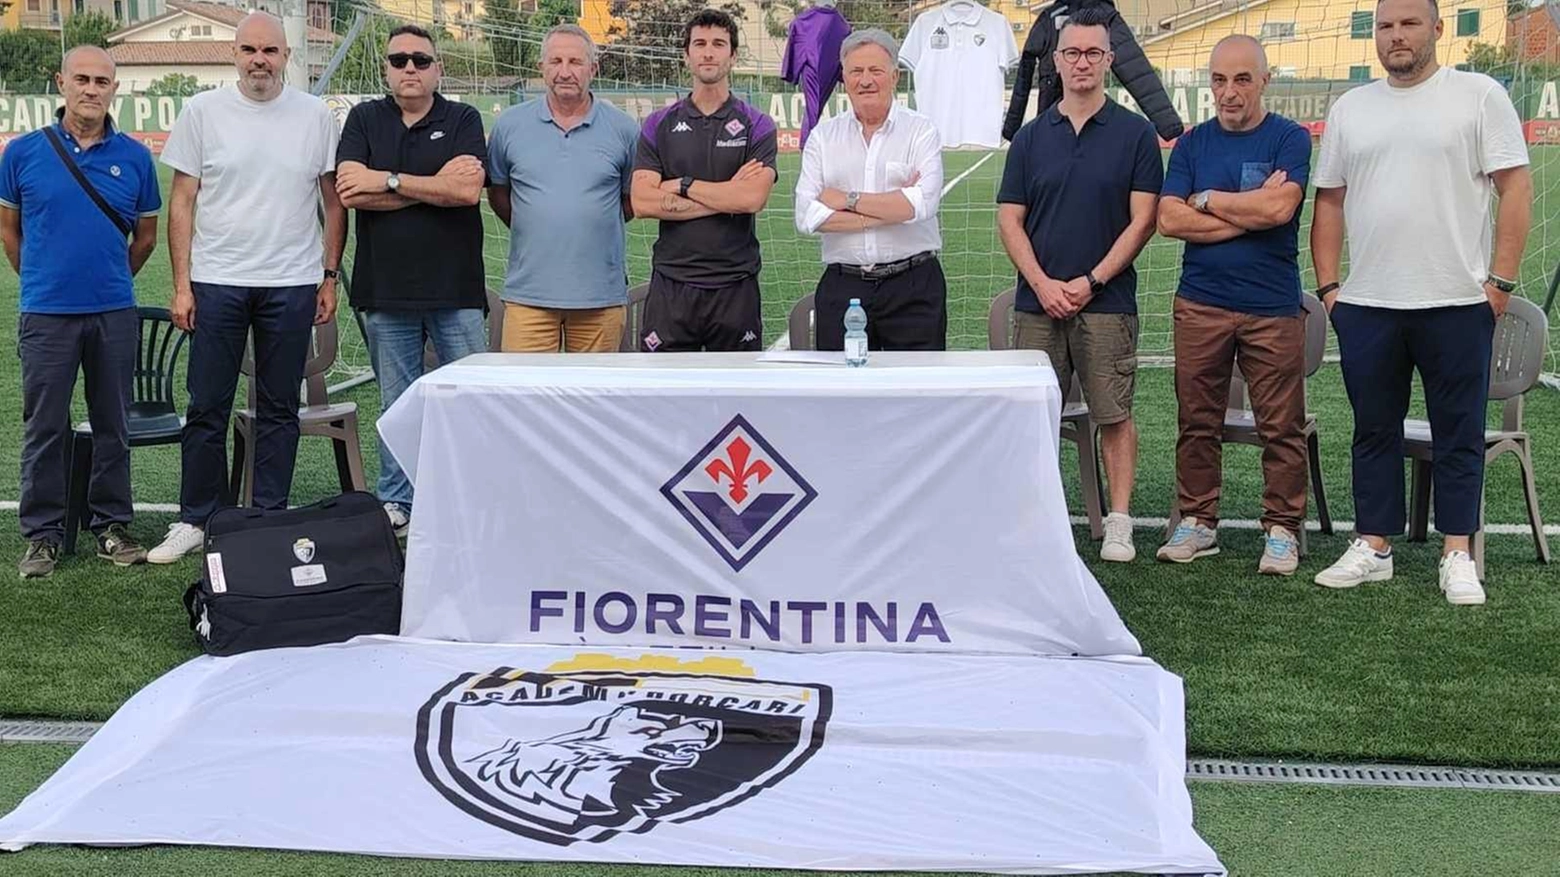 L'Academy Porcari diventa Centro Formazione della Fiorentina, siglando un accordo che la lega strettamente al club viola. Il presidente Silla si dice orgoglioso di questa partnership che promette di portare benefici a entrambe le società e ai giovani talenti del territorio.